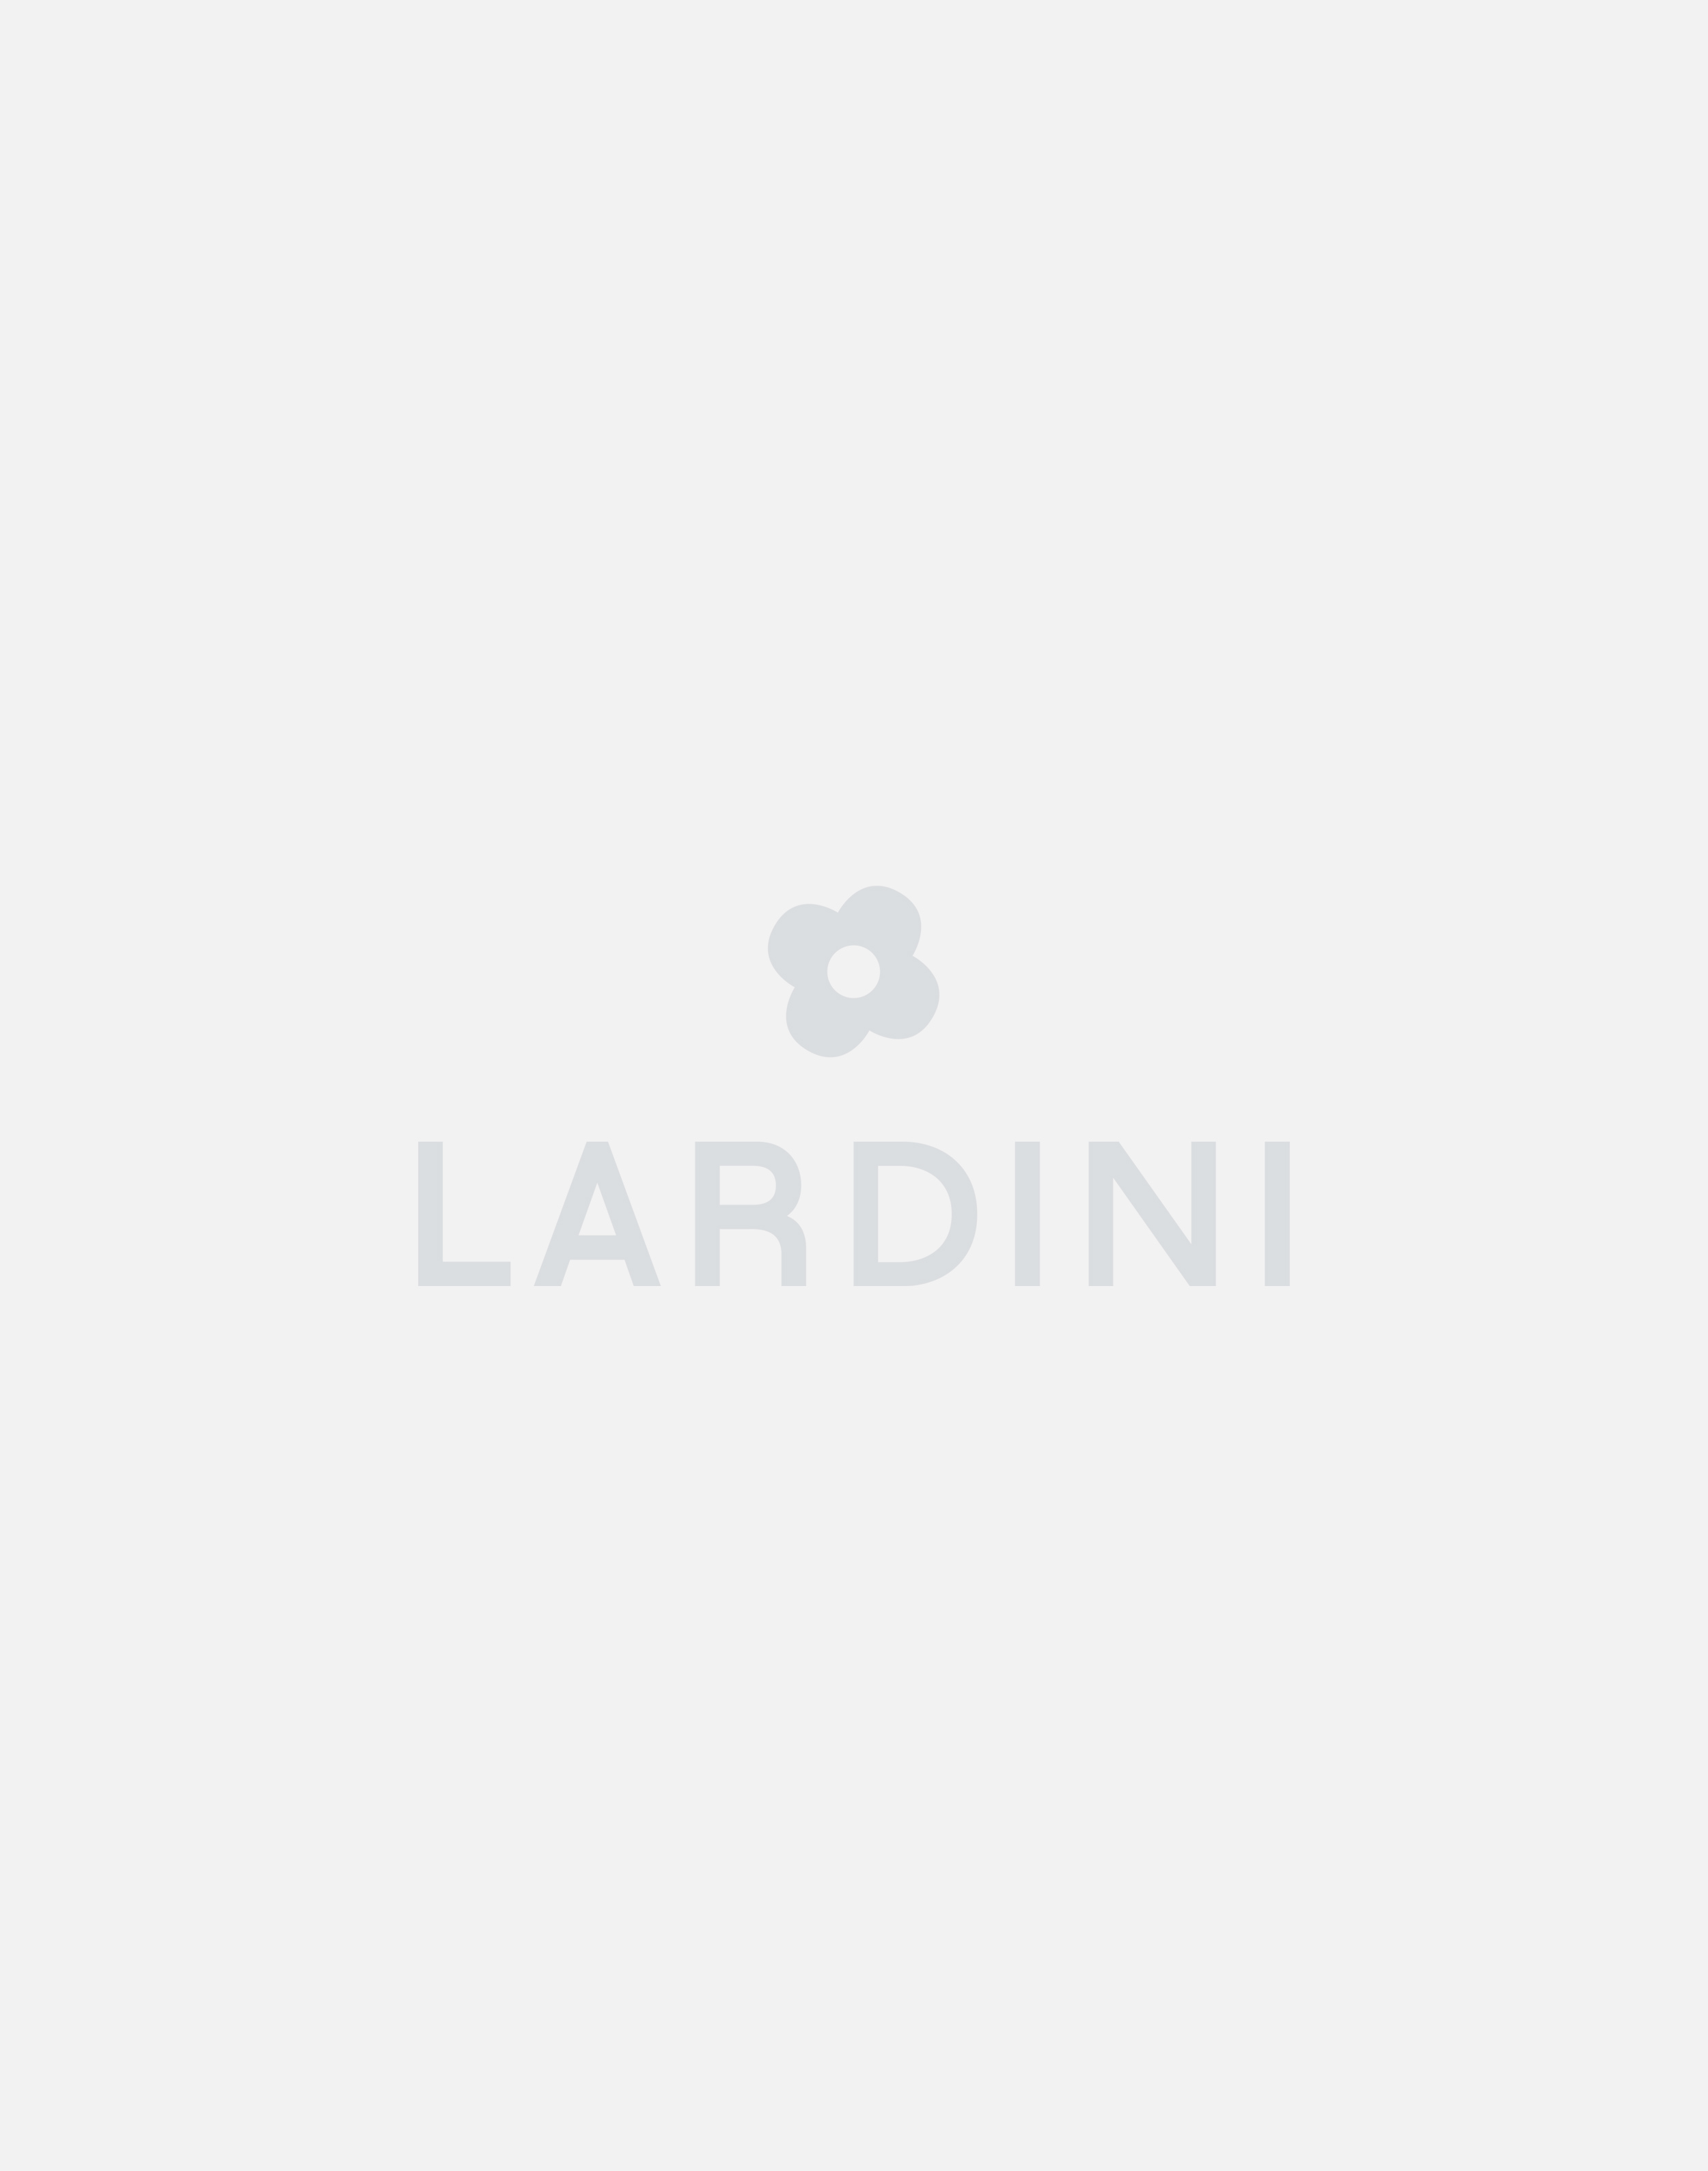 Cotton and nylon field jacket - Lardini by Yosuke Aizawa 2